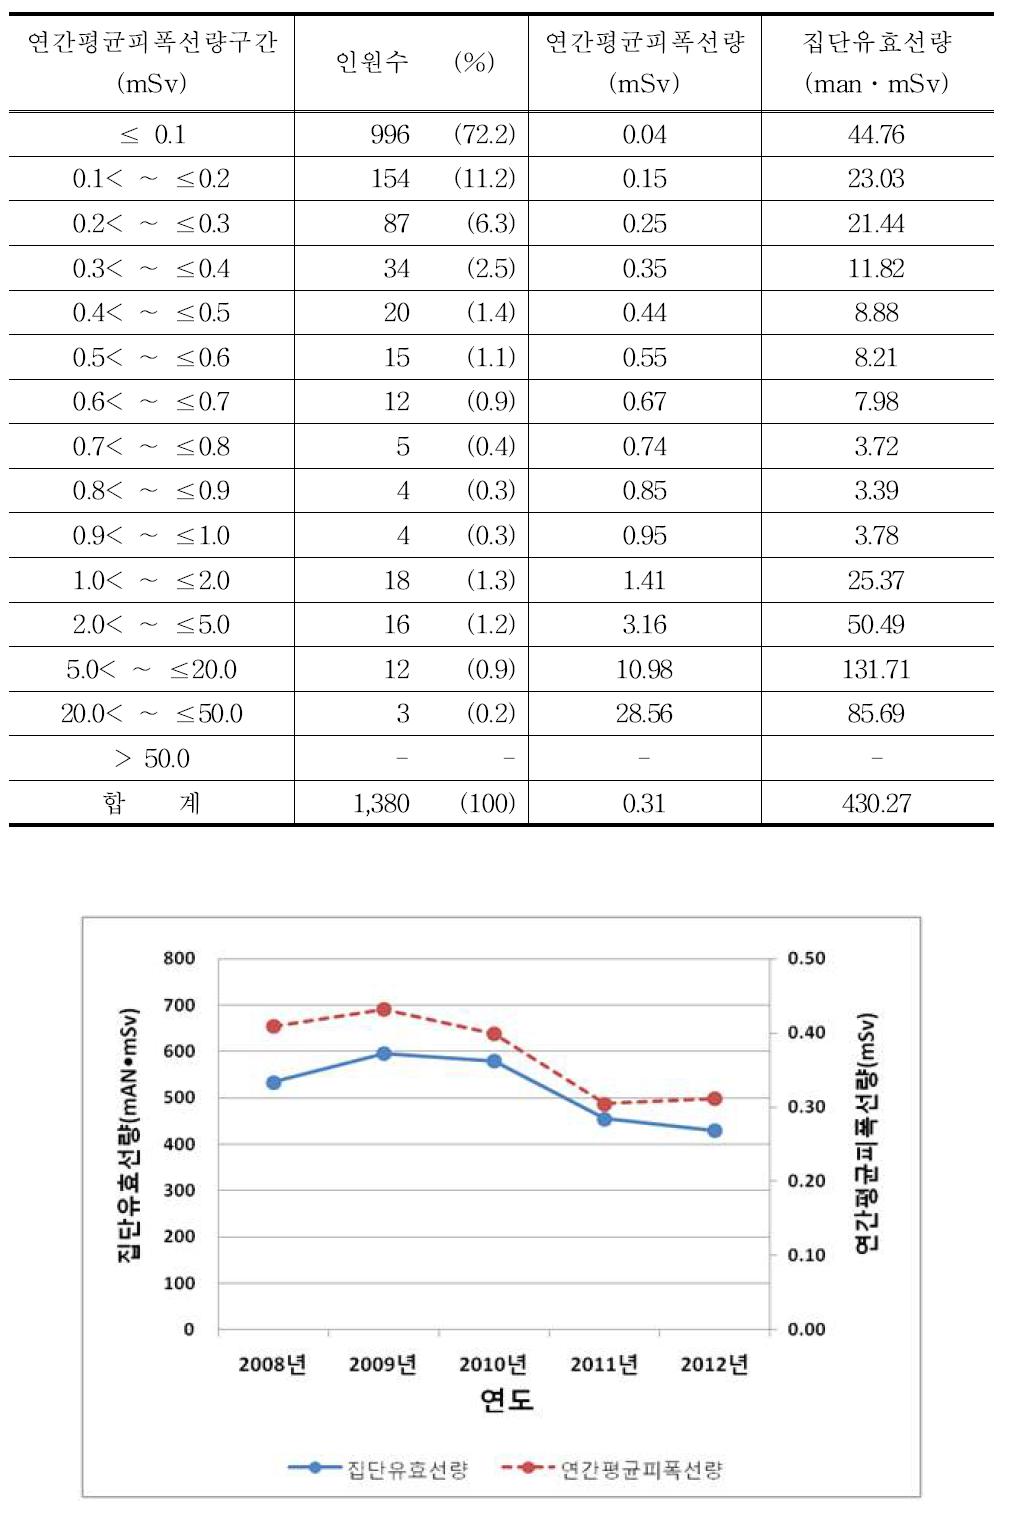 2012년 영상의학과전문의 연간평균피폭선량 구간별 분포표